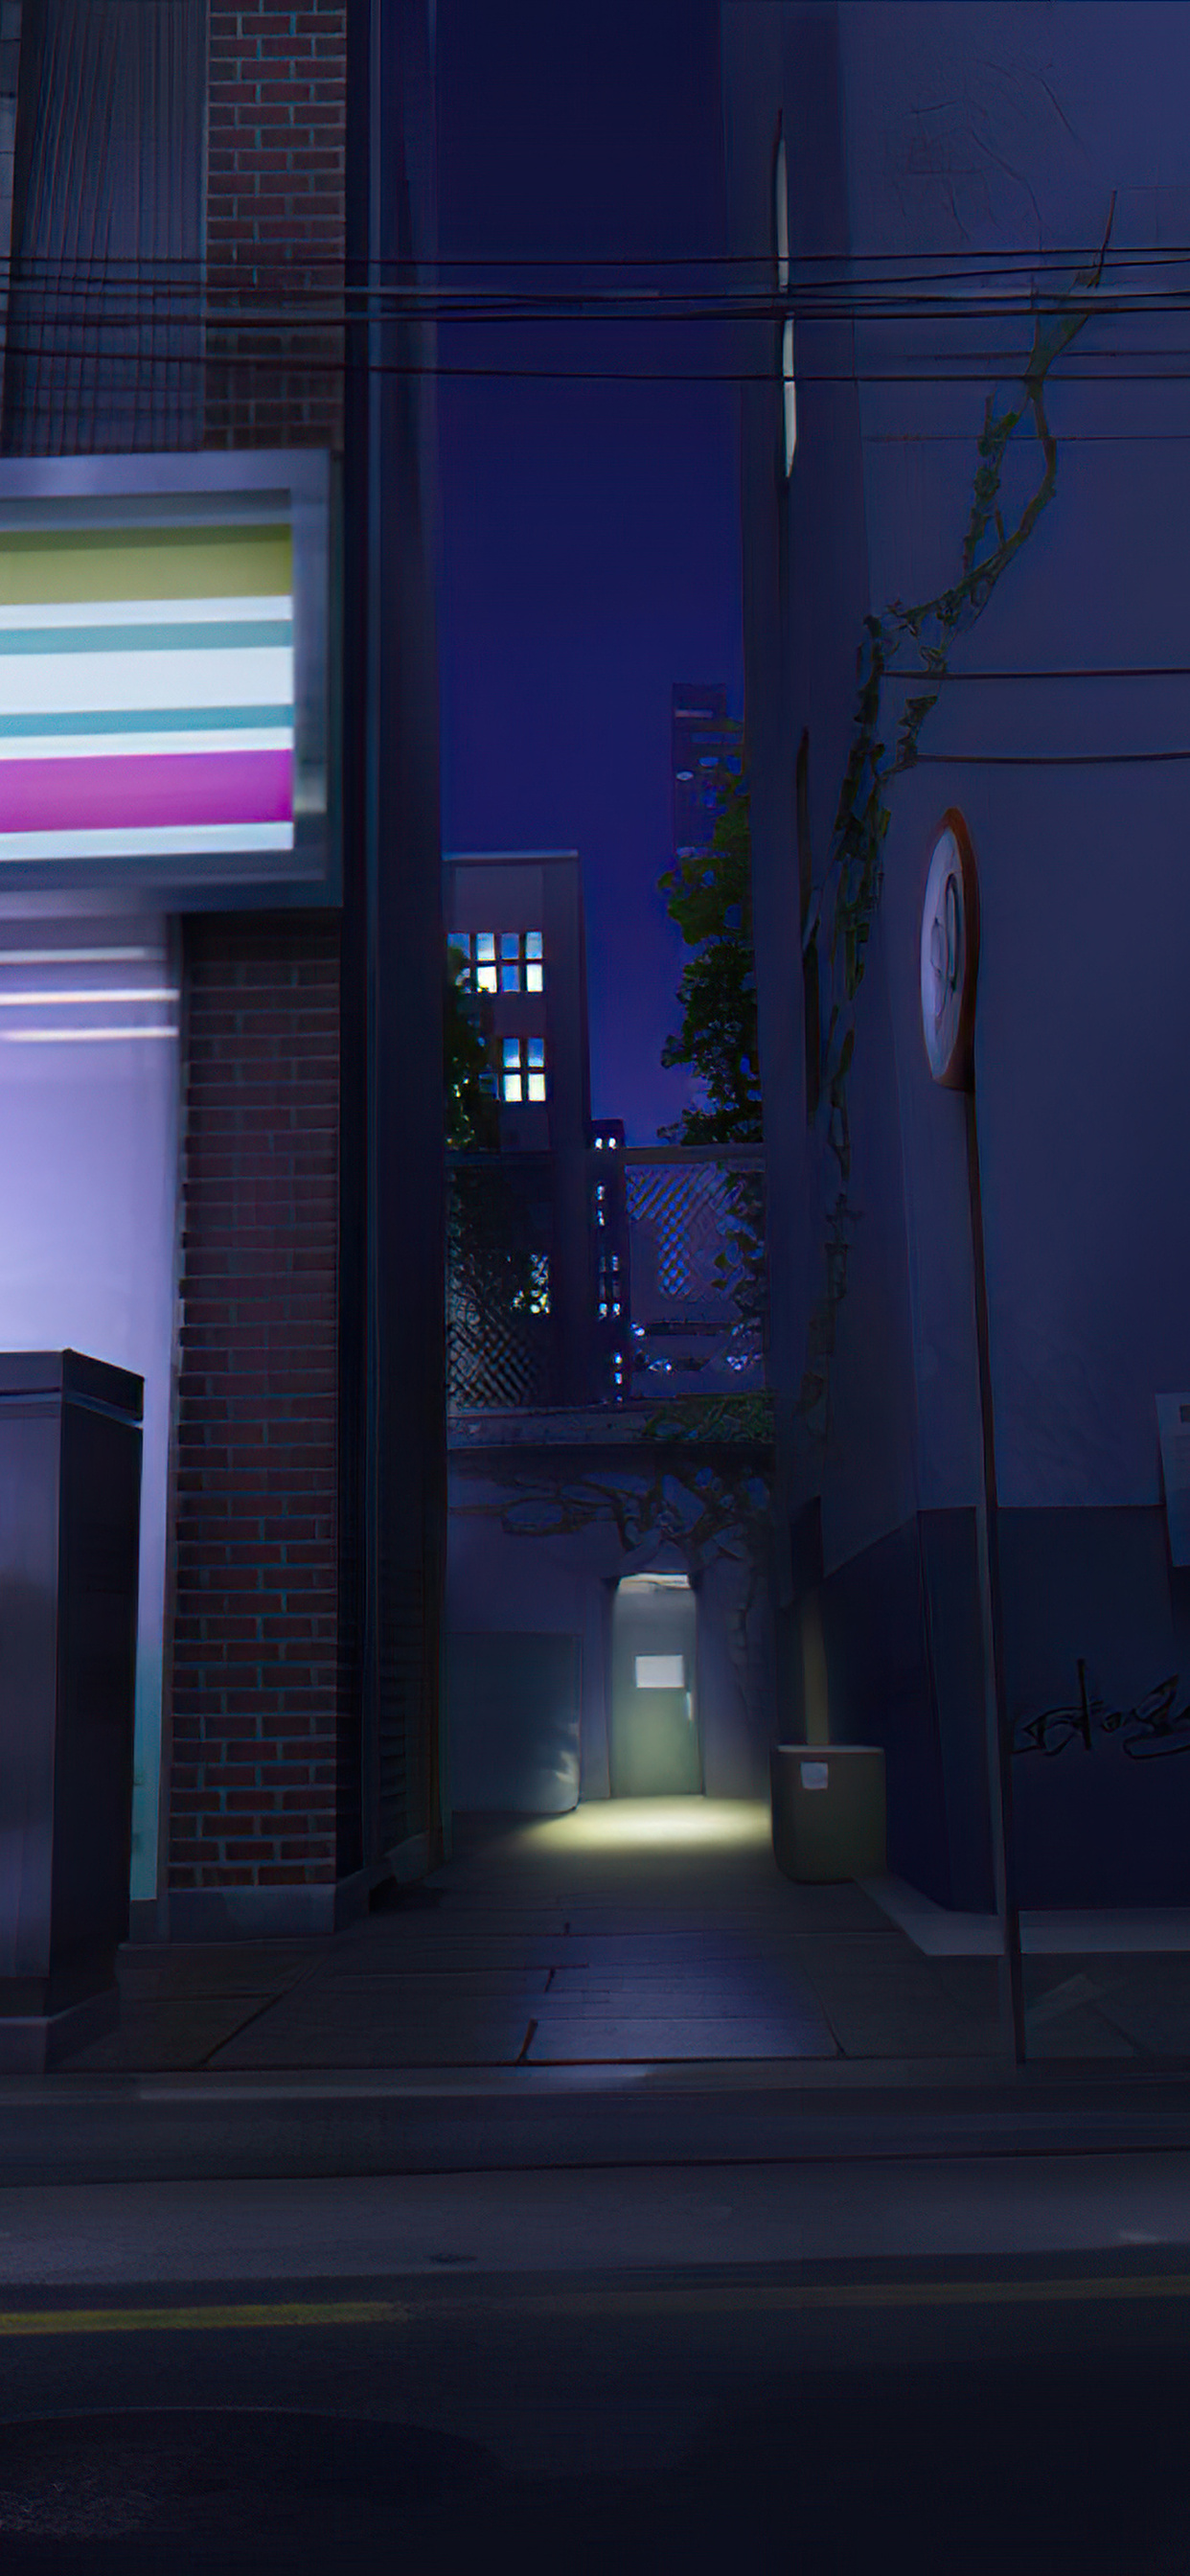 between-buildings-night-mf.jpg